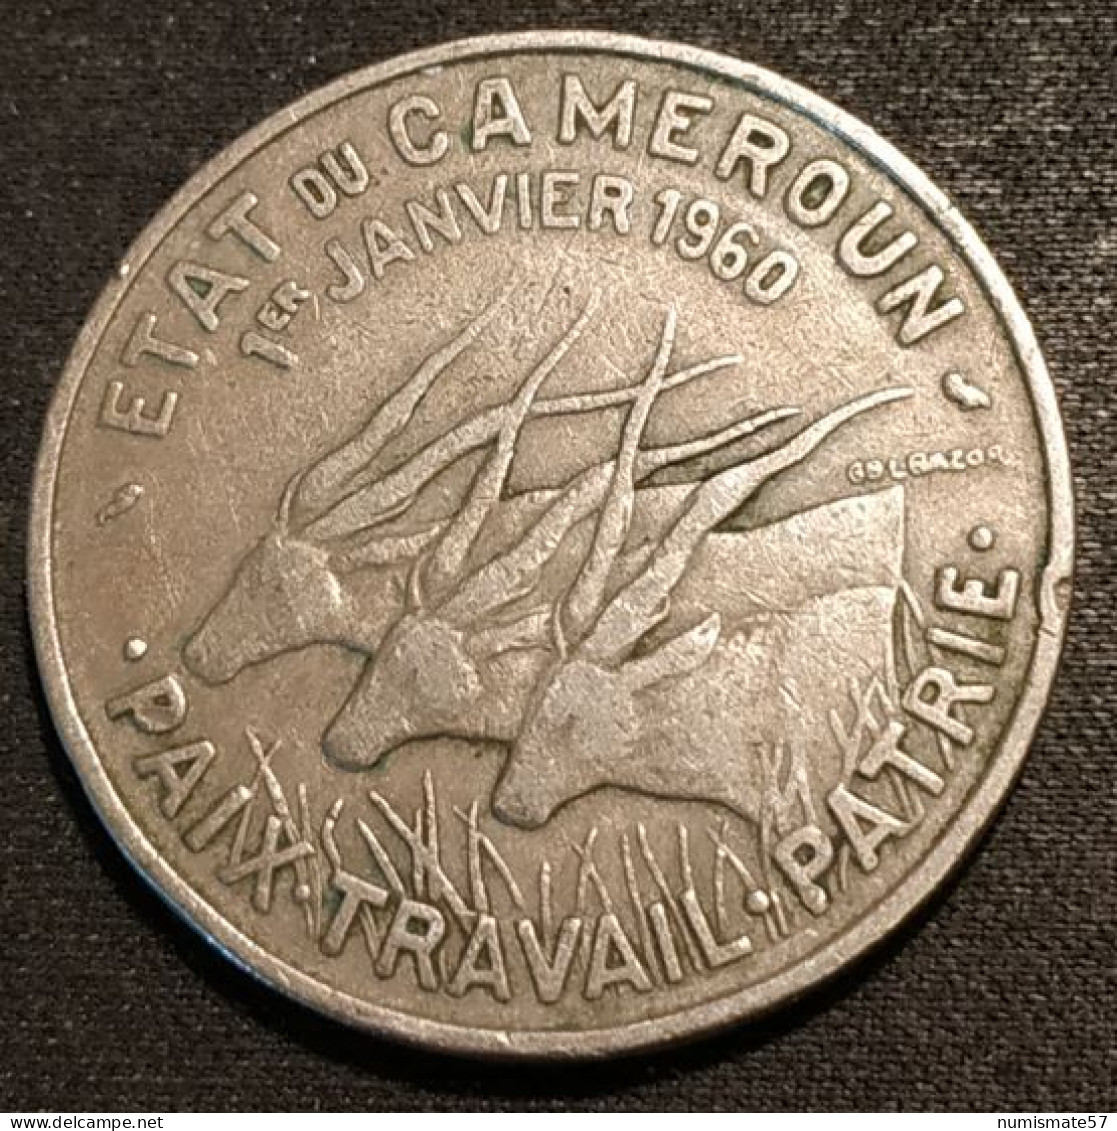 CAMEROUN - 50 FRANCS 1960 - KM 13 - ( 1er JANVIER 1960 - PAIX TRAVAIL PATRIE ) - Cameroon